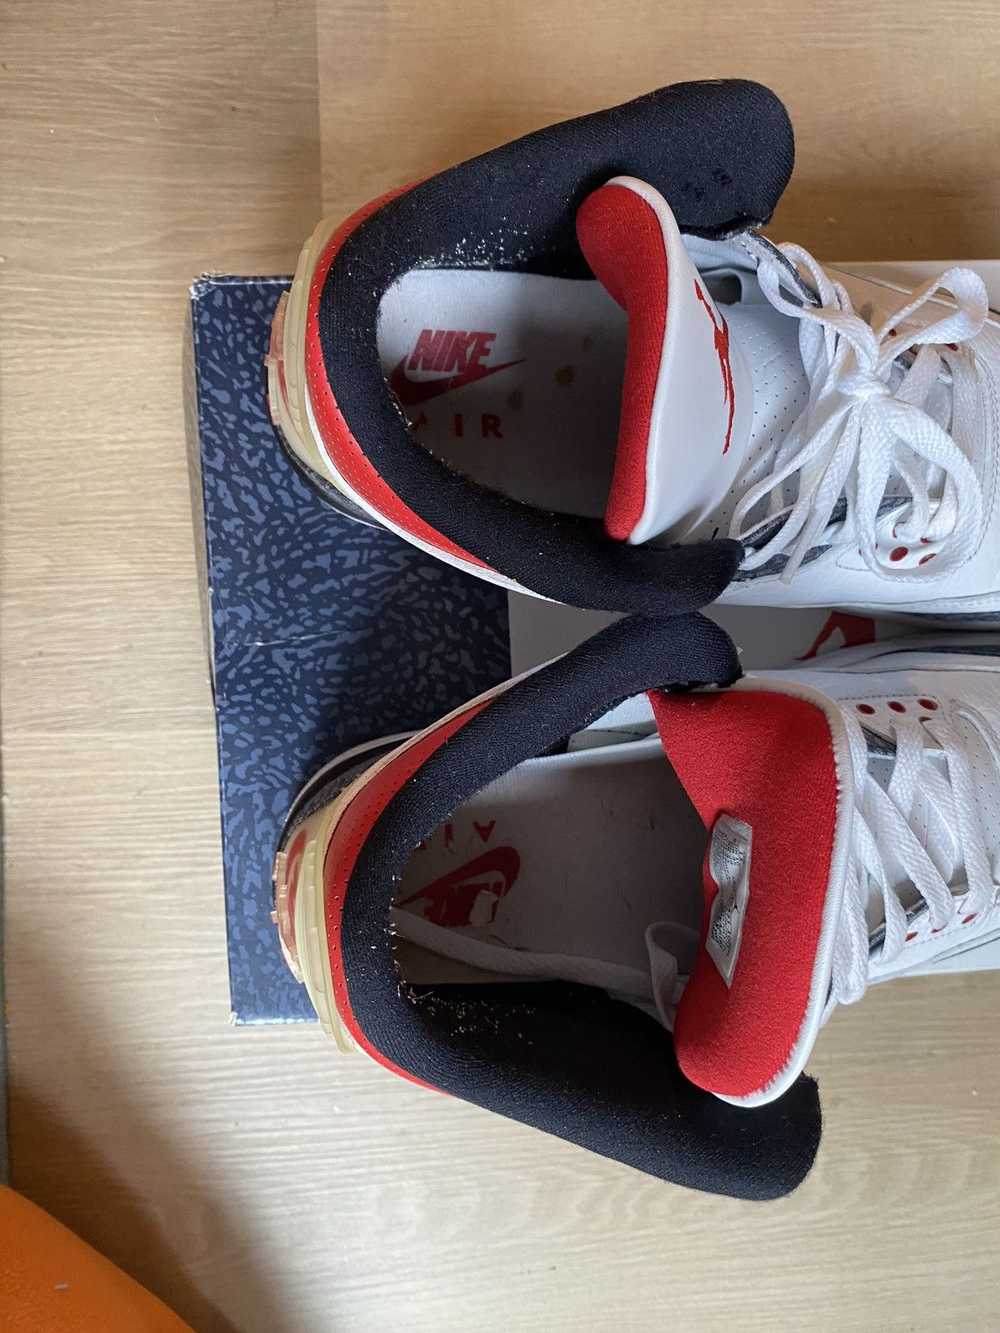 Jordan Brand × Nike Jordan 3 retro - image 9